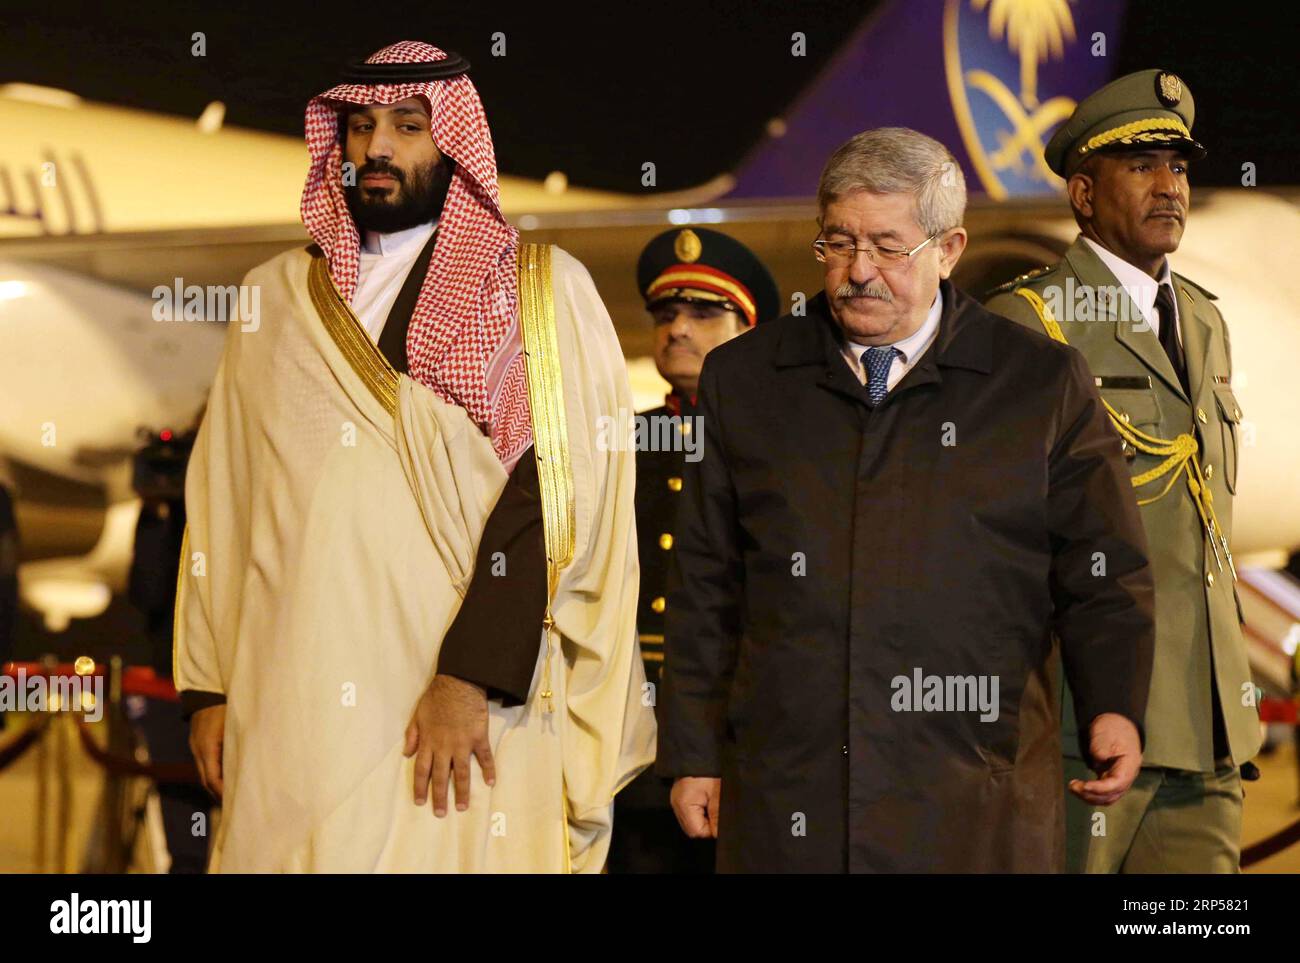 (181202) -- ALGER, 2 déc. 2018 () -- le prince héritier saoudien Mohammed bin Salmane (G, front) est accueilli par le Premier ministre algérien Ahmed Ouyahia (D, front) à son arrivée à Alger, Algérie, le 2 décembre 2018. Dimanche, le prince héritier saoudien Mohammed bin Salmane a donné le coup d'envoi d'une visite officielle de deux jours en Algérie avec des membres du gouvernement saoudien, des hommes d'affaires et des personnalités éminentes. () ALGÉRIE-ALGER-PRINCE HÉRITIER SAOUDIEN-VISIT XINHUA PUBLICATIONXNOTXINXCHN Banque D'Images